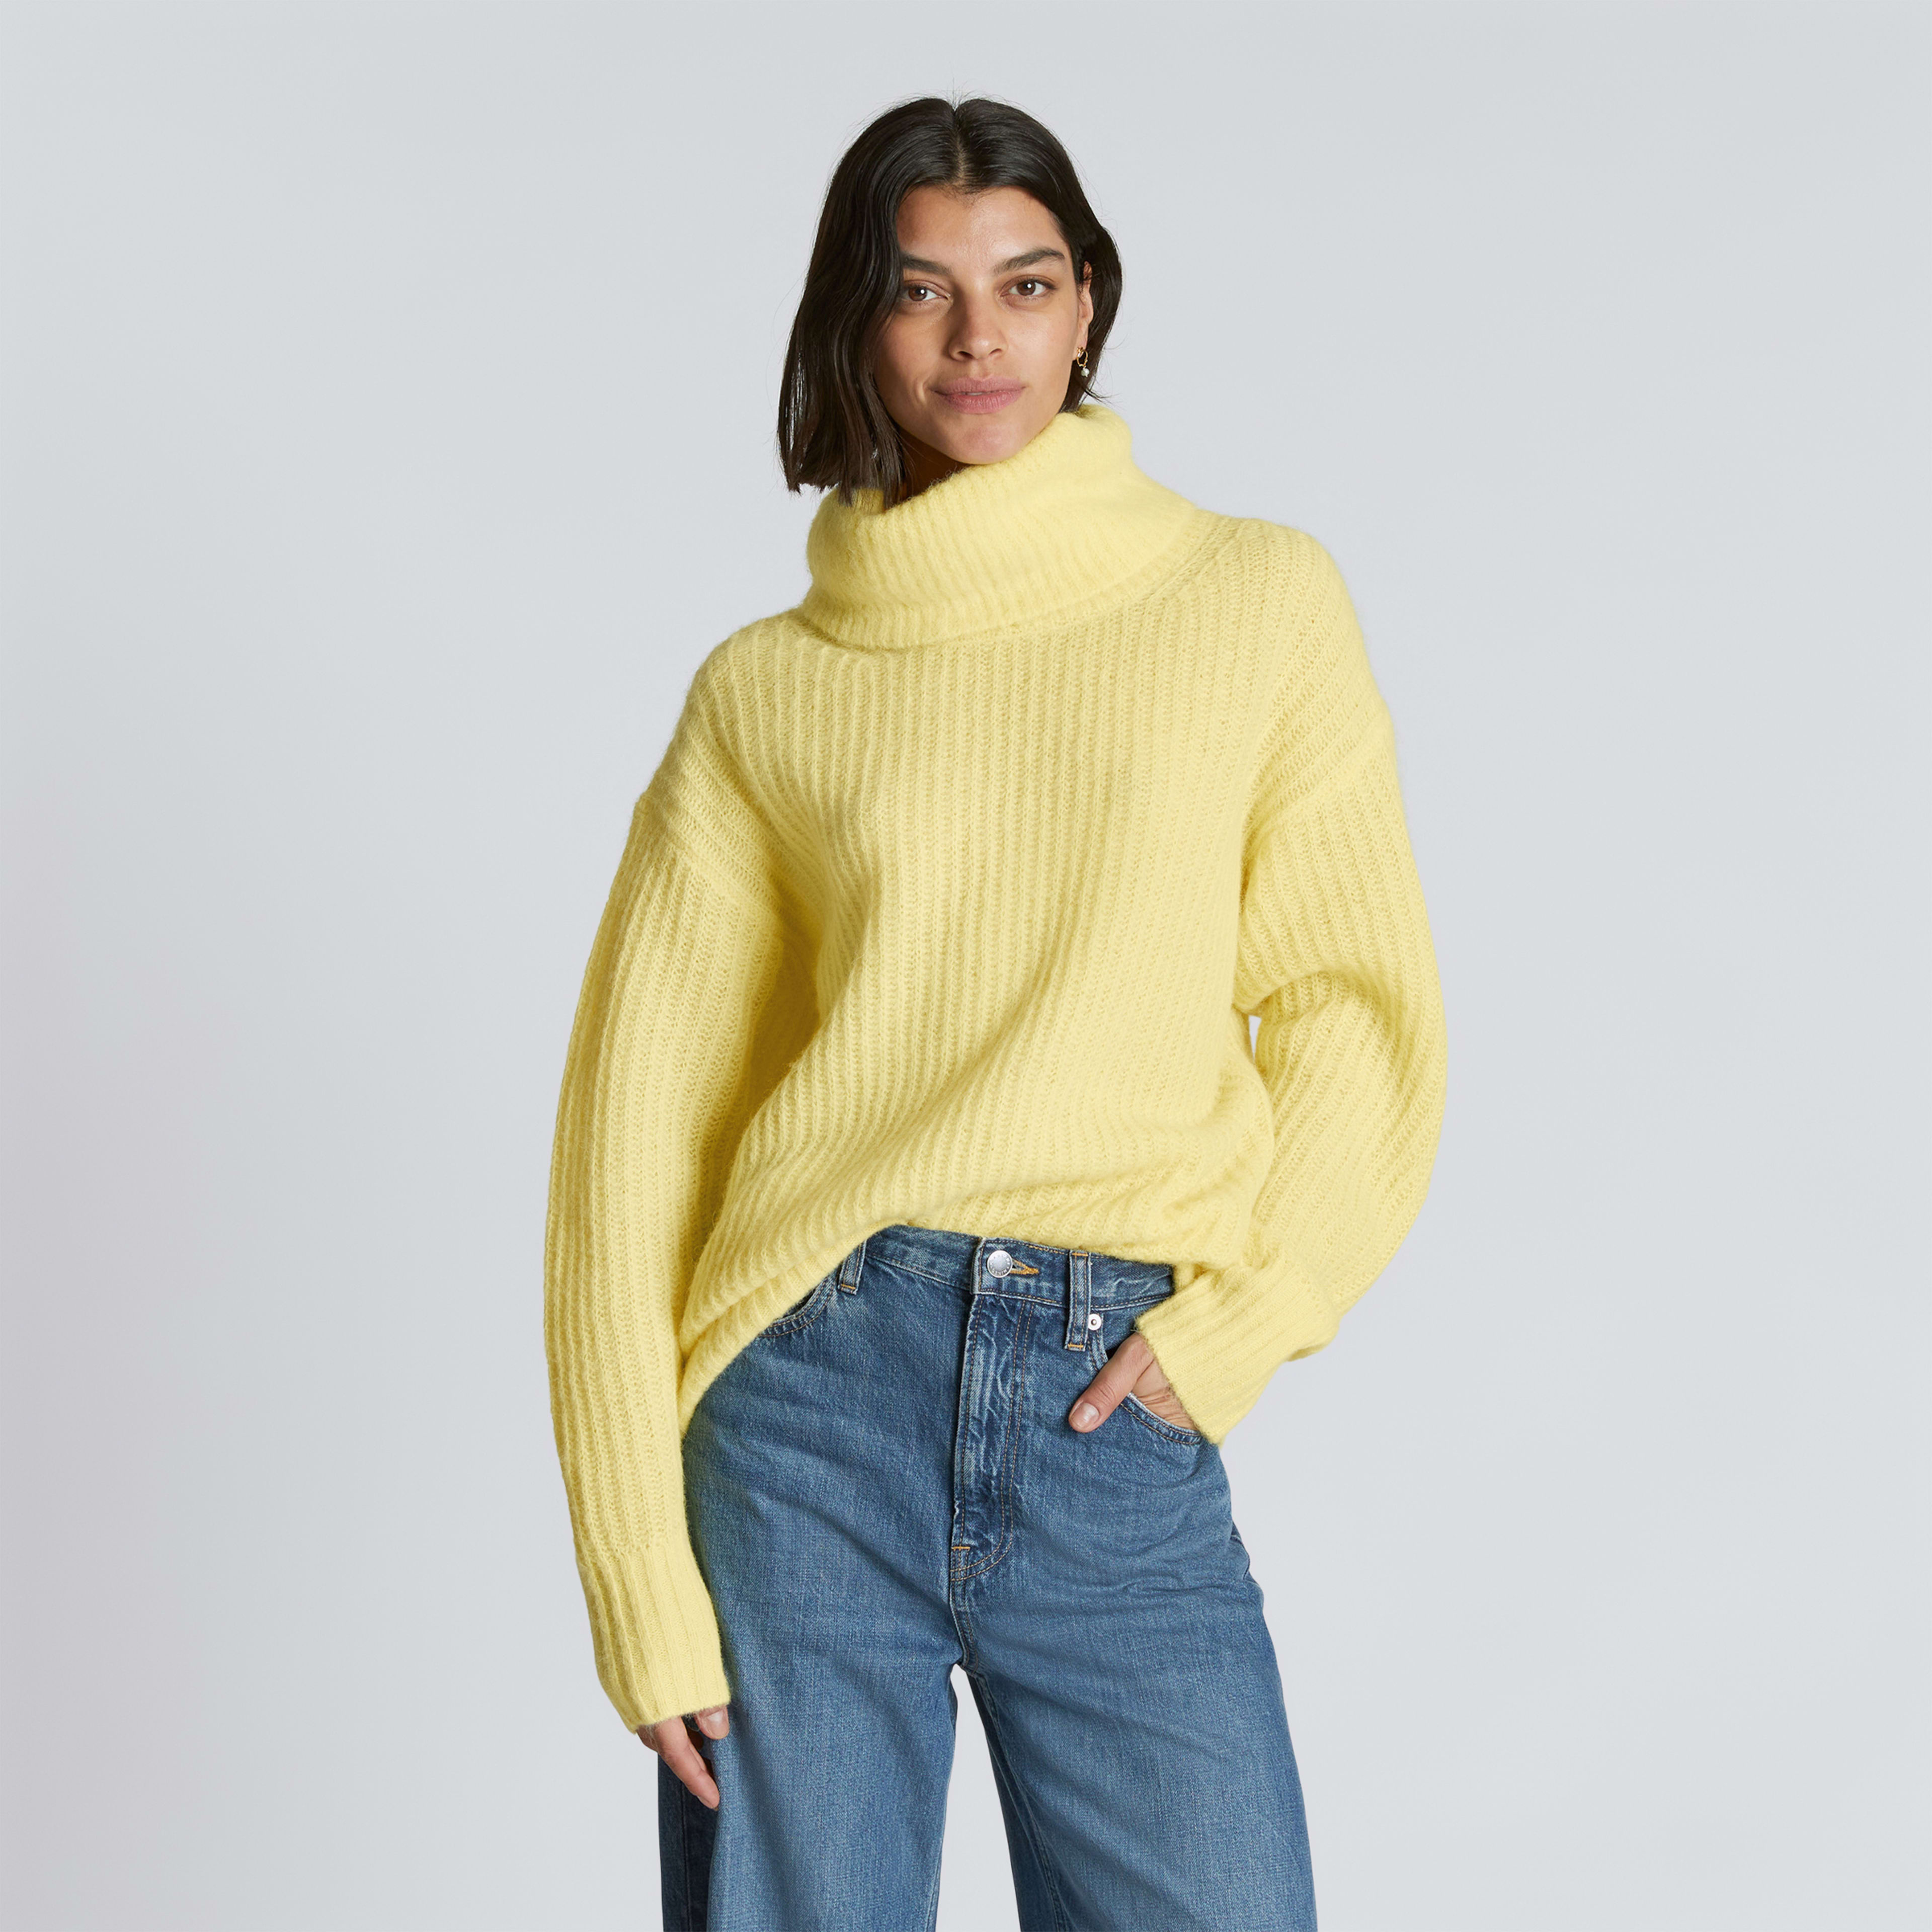 Women's Alpaca Oversized Turtleneck Sweater by Everlane in Lemon, Size XXS